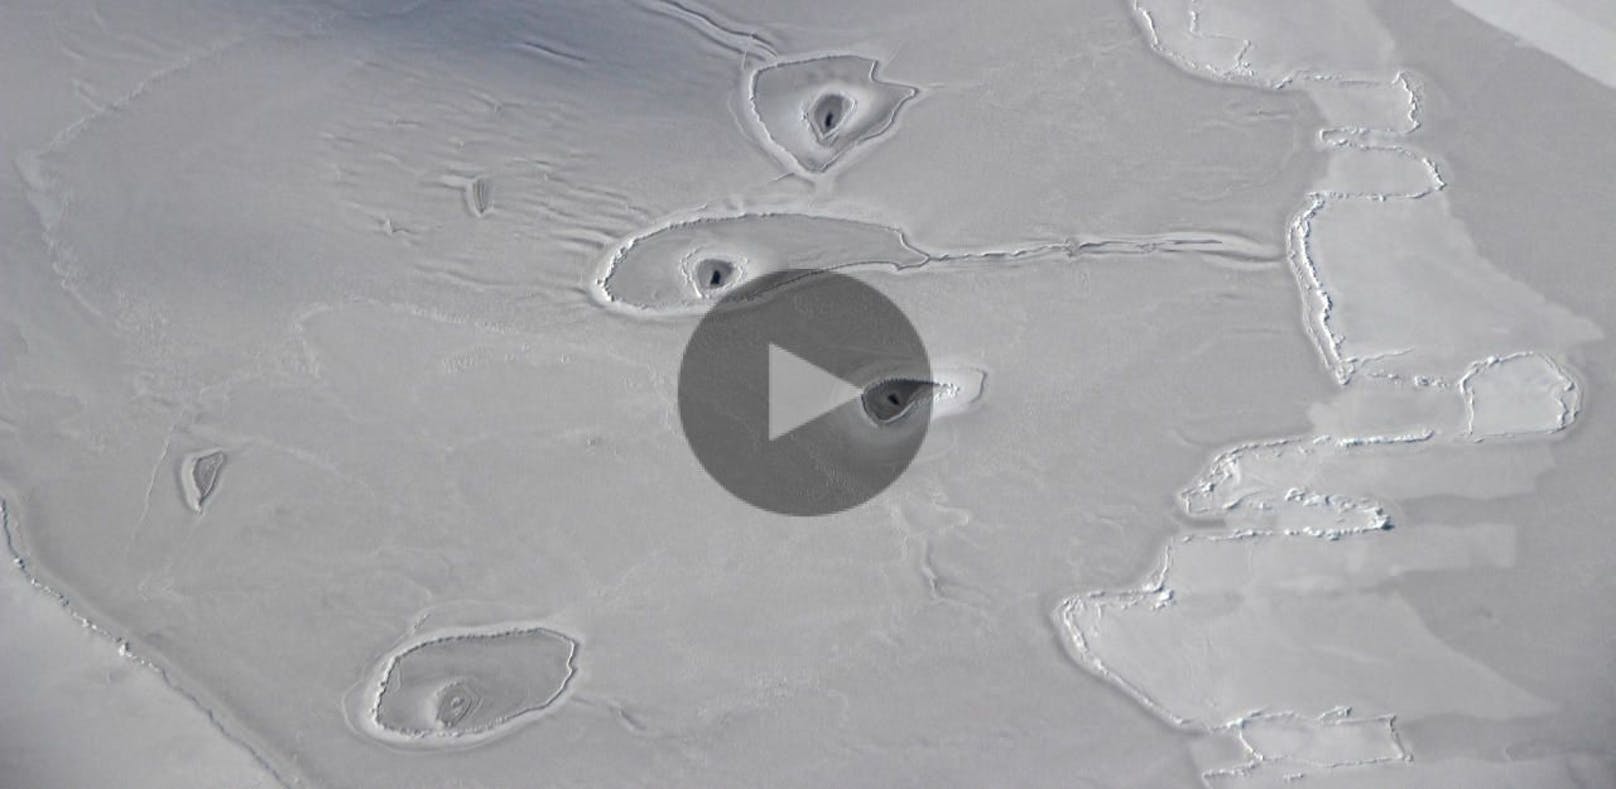 NASA macht mysteriöse Entdeckung in der Arktis